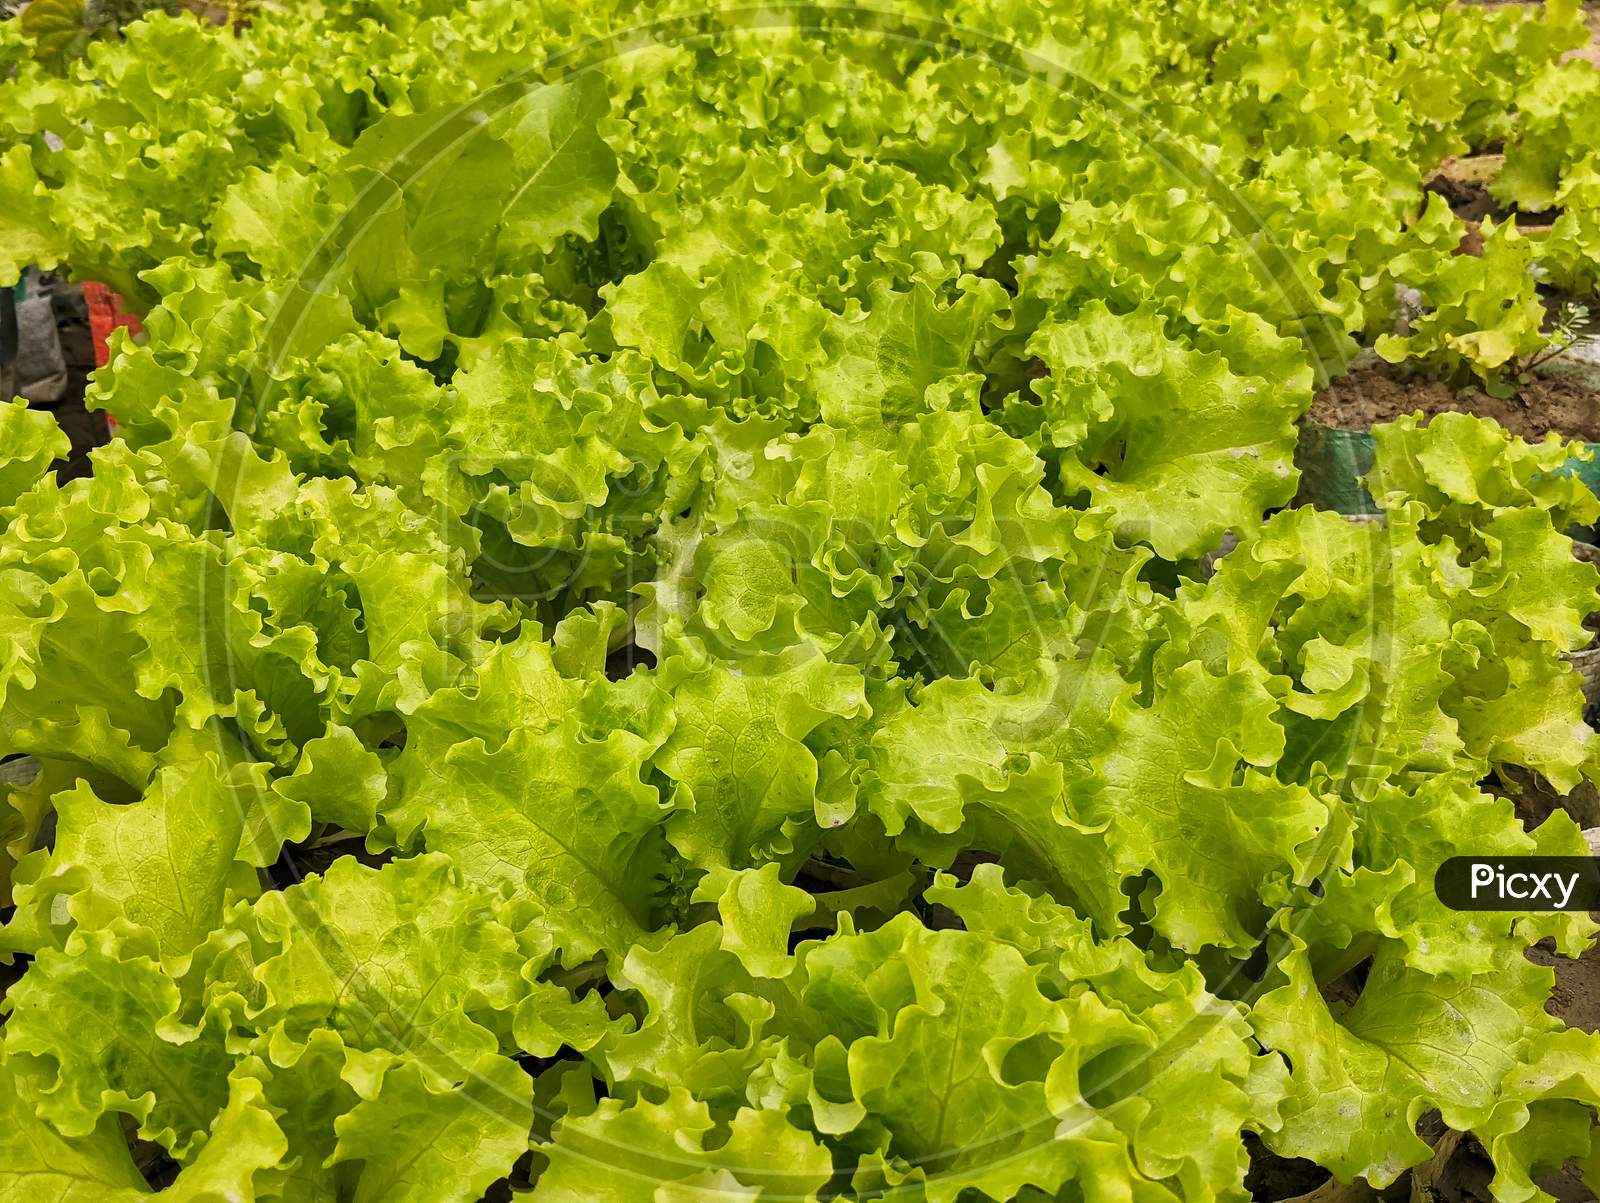 Top View Of Green Lettuce Growing In Vegetable Garden.